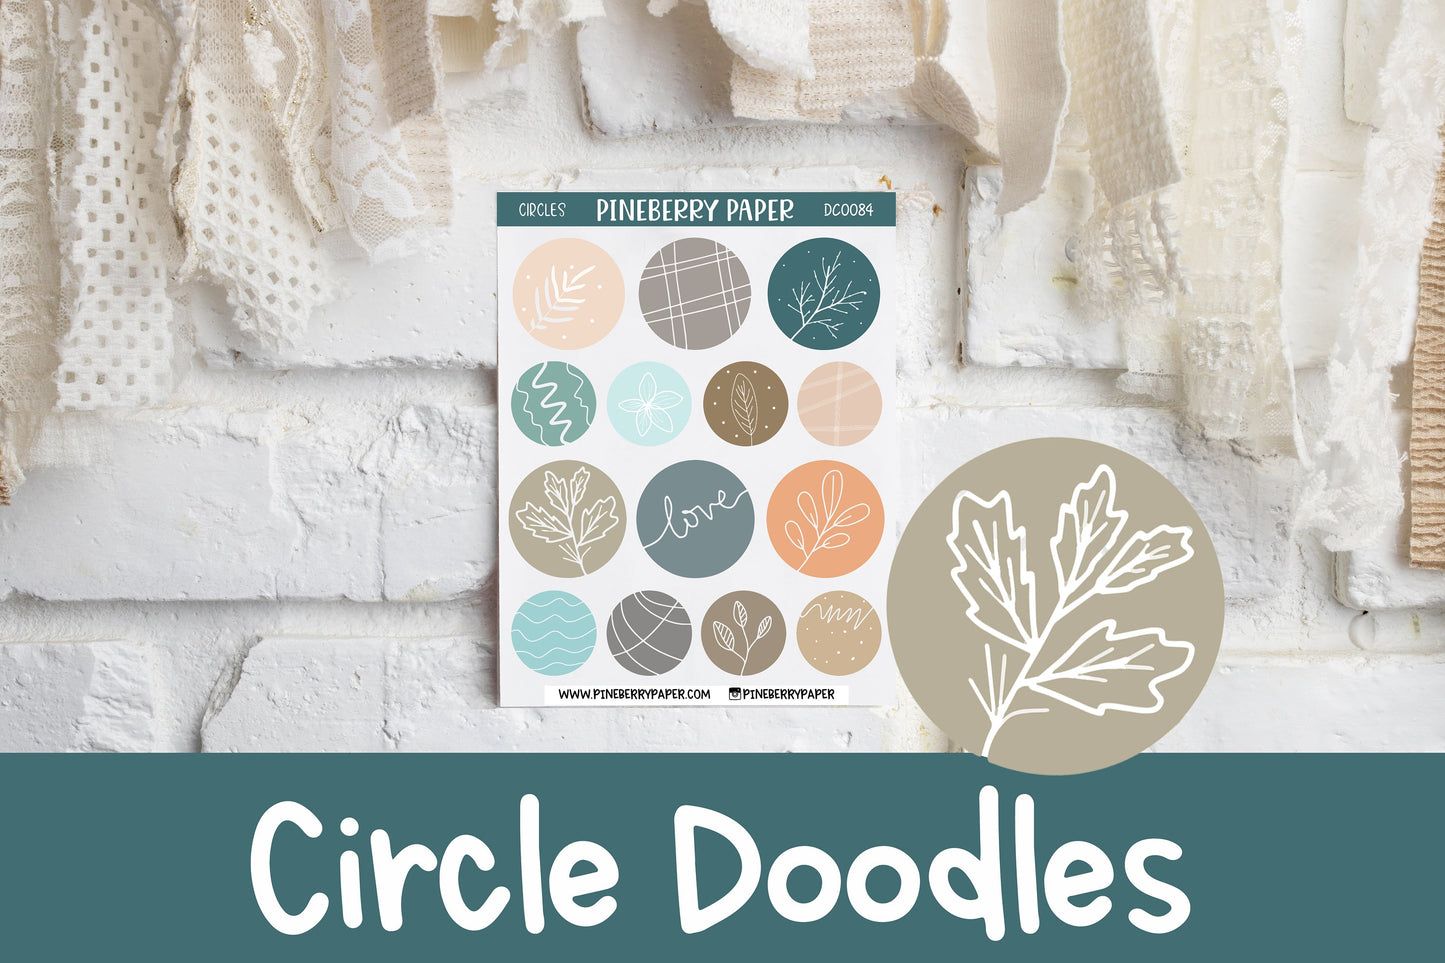 Circle Doodles | DC0084